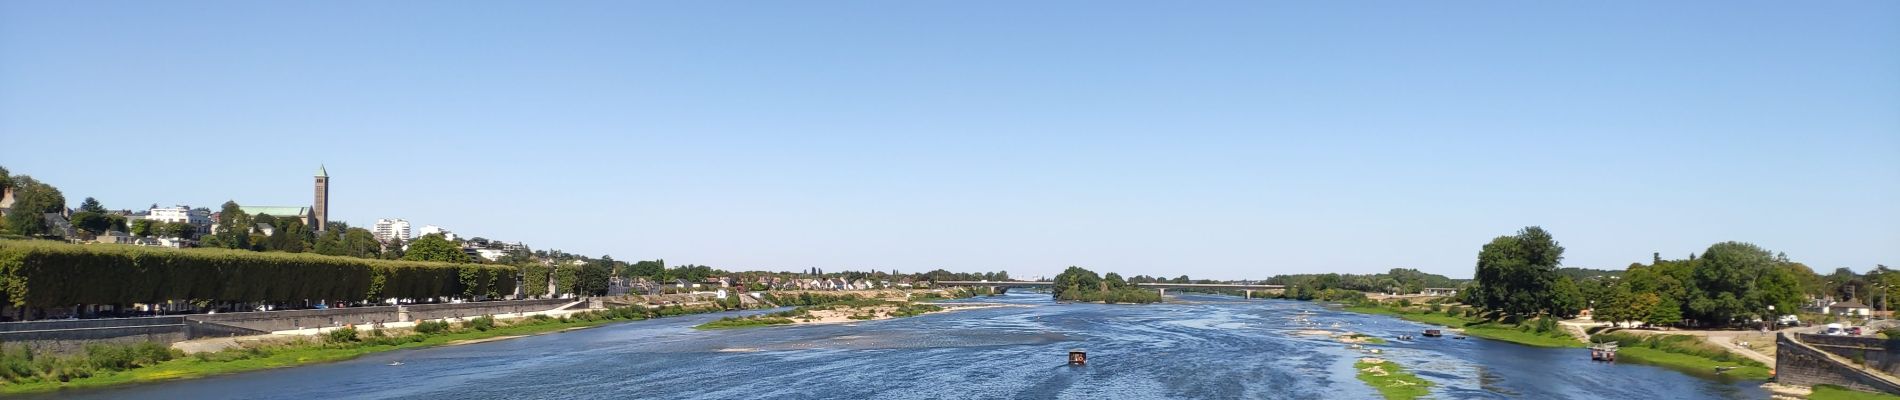 Randonnée Vélo de route Muides-sur-Loire - Itinéraire 12 - Au fil de Loire - Photo